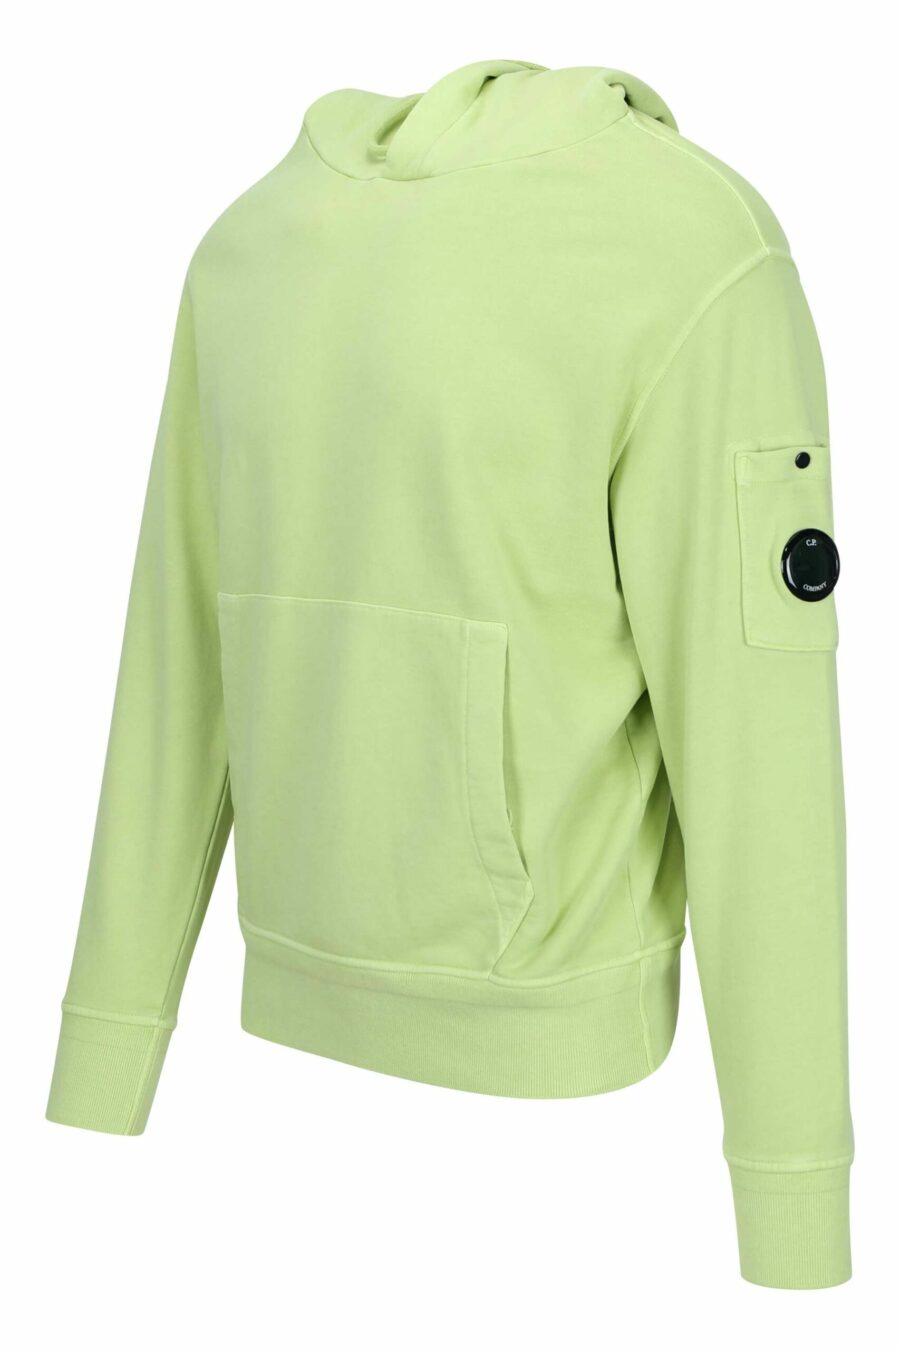 Sweat à capuche vert clair avec pochette pour lentille mini-logo - 7620943677225 1 à l'échelle